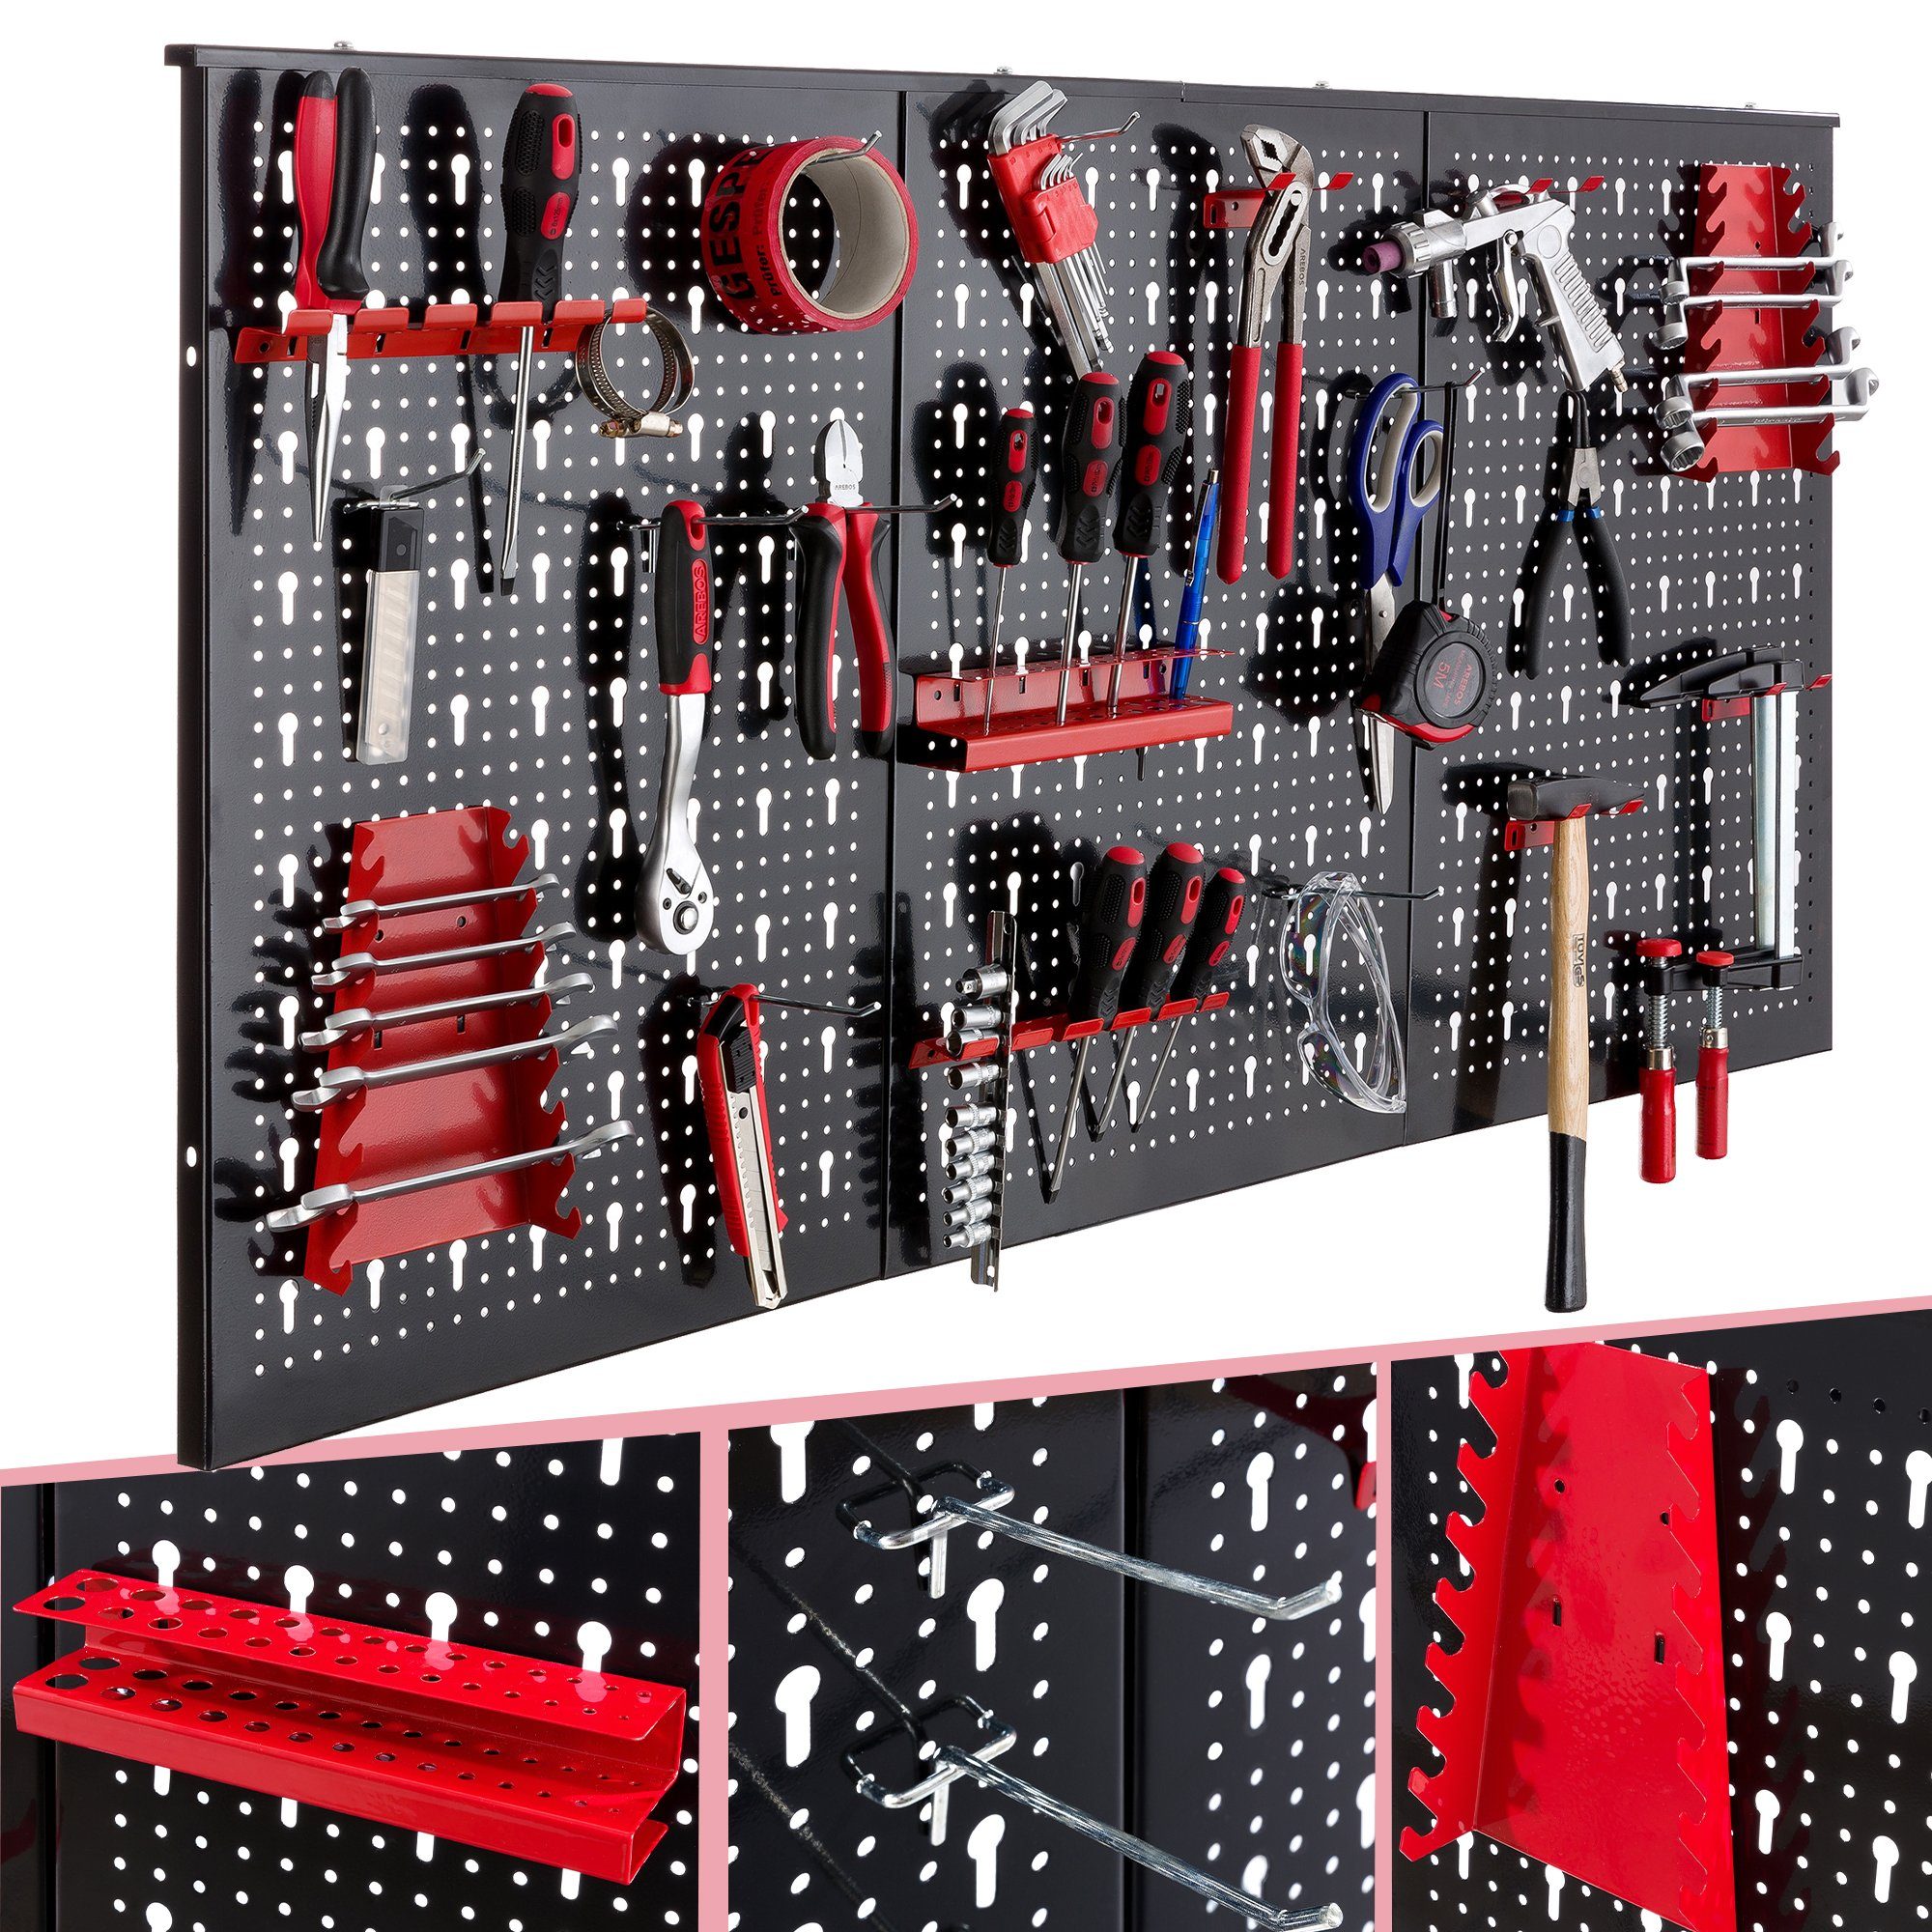 Arebos Lochwand Werkzeugwand dreiteilig, 17-teiliges 17 Rot/Blau, (Set) mit Haken, 3 Stk., Hakenset Schwarz/Rot